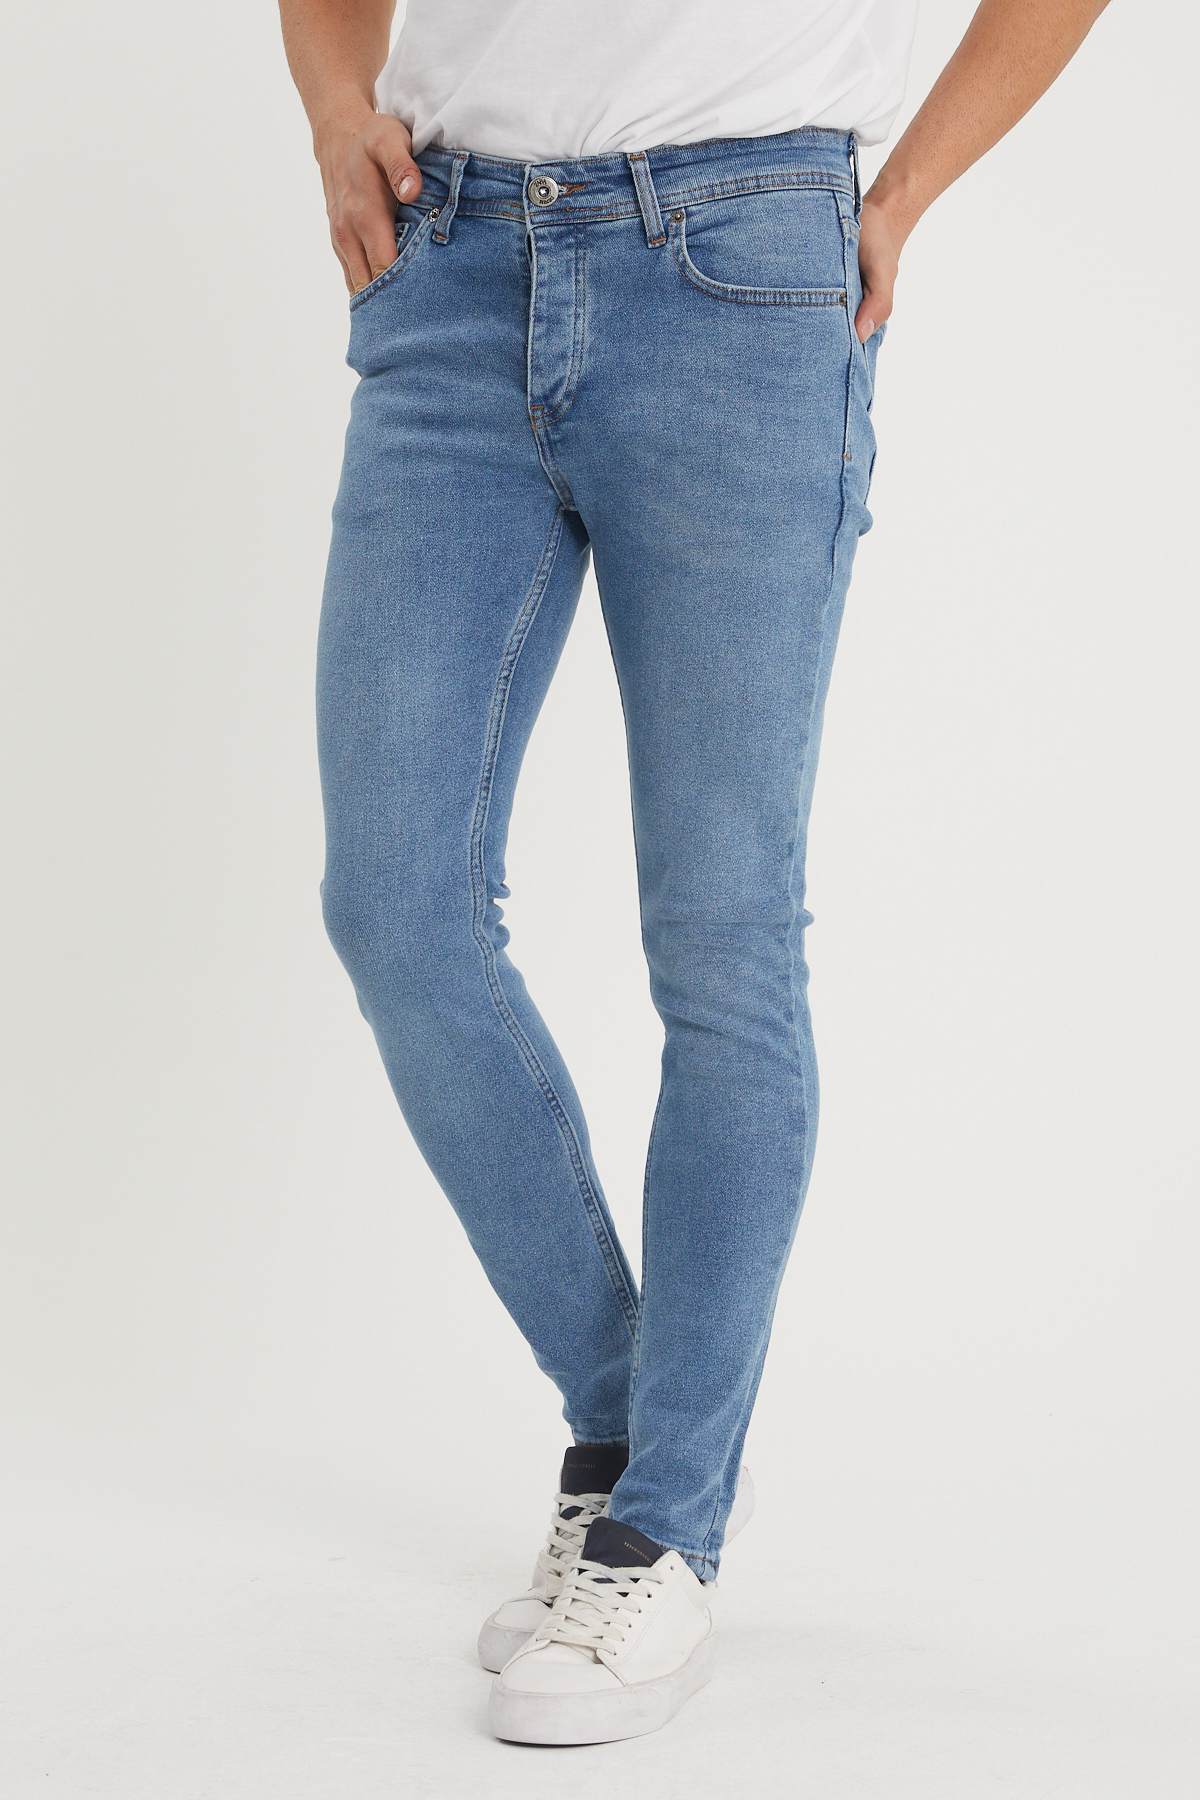 Mavi Slim Fit Jean Pantolon 1KXE5-44351-12 